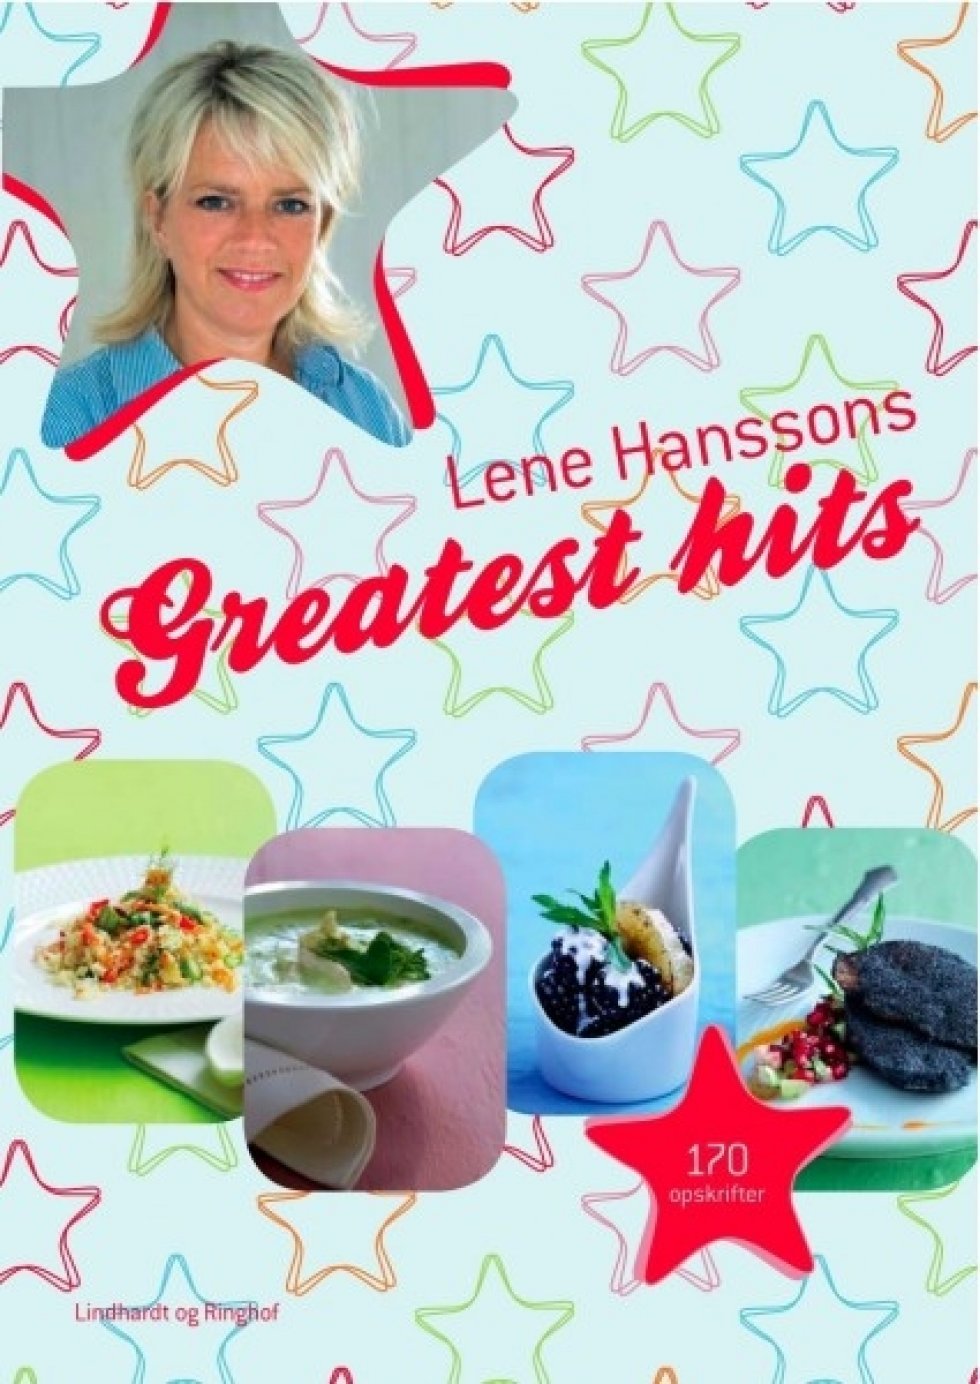 Lene Hanssons Greatest hits